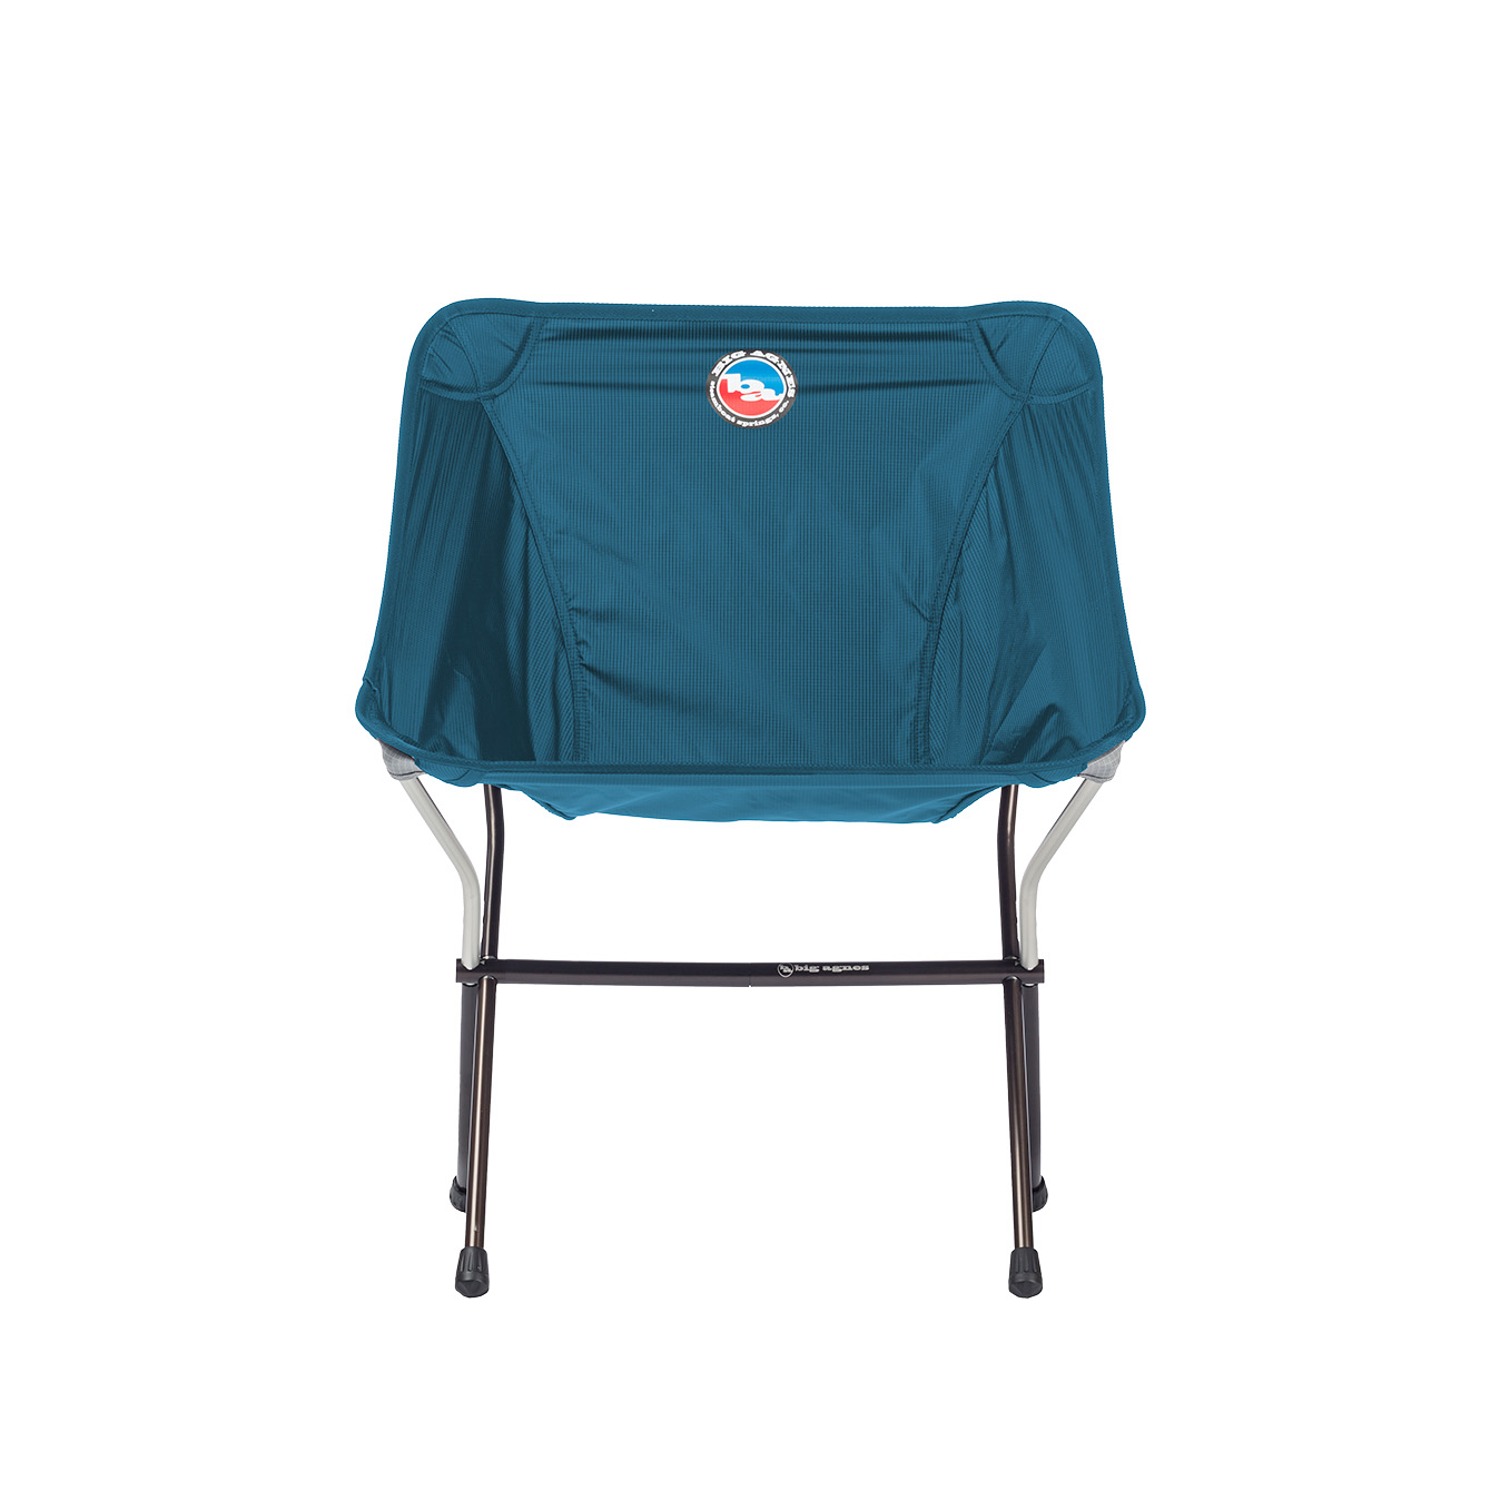 Skyline UL Chair - Blue